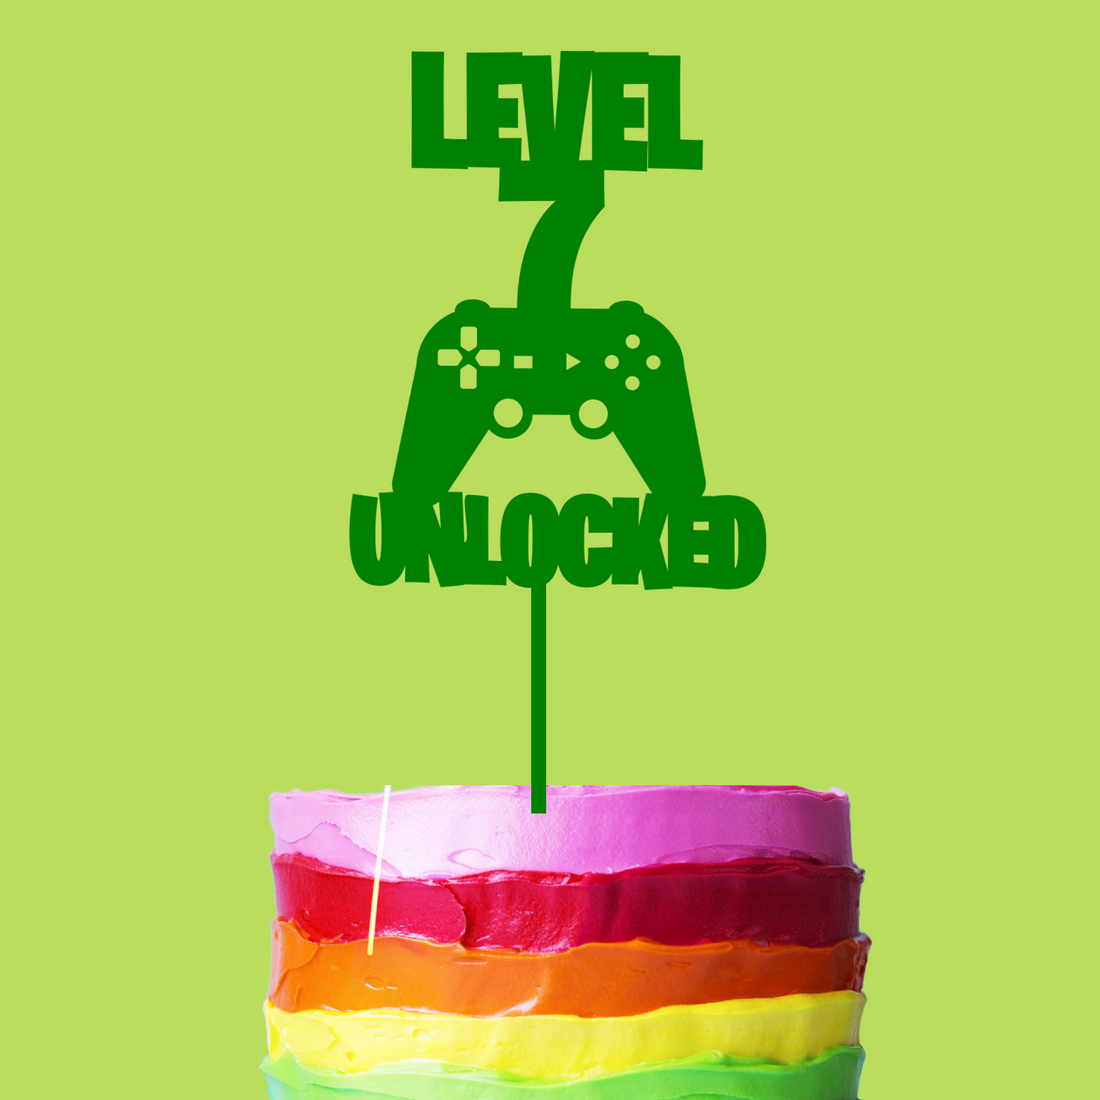 Level 7 Unlocked Gamer Cake Topper